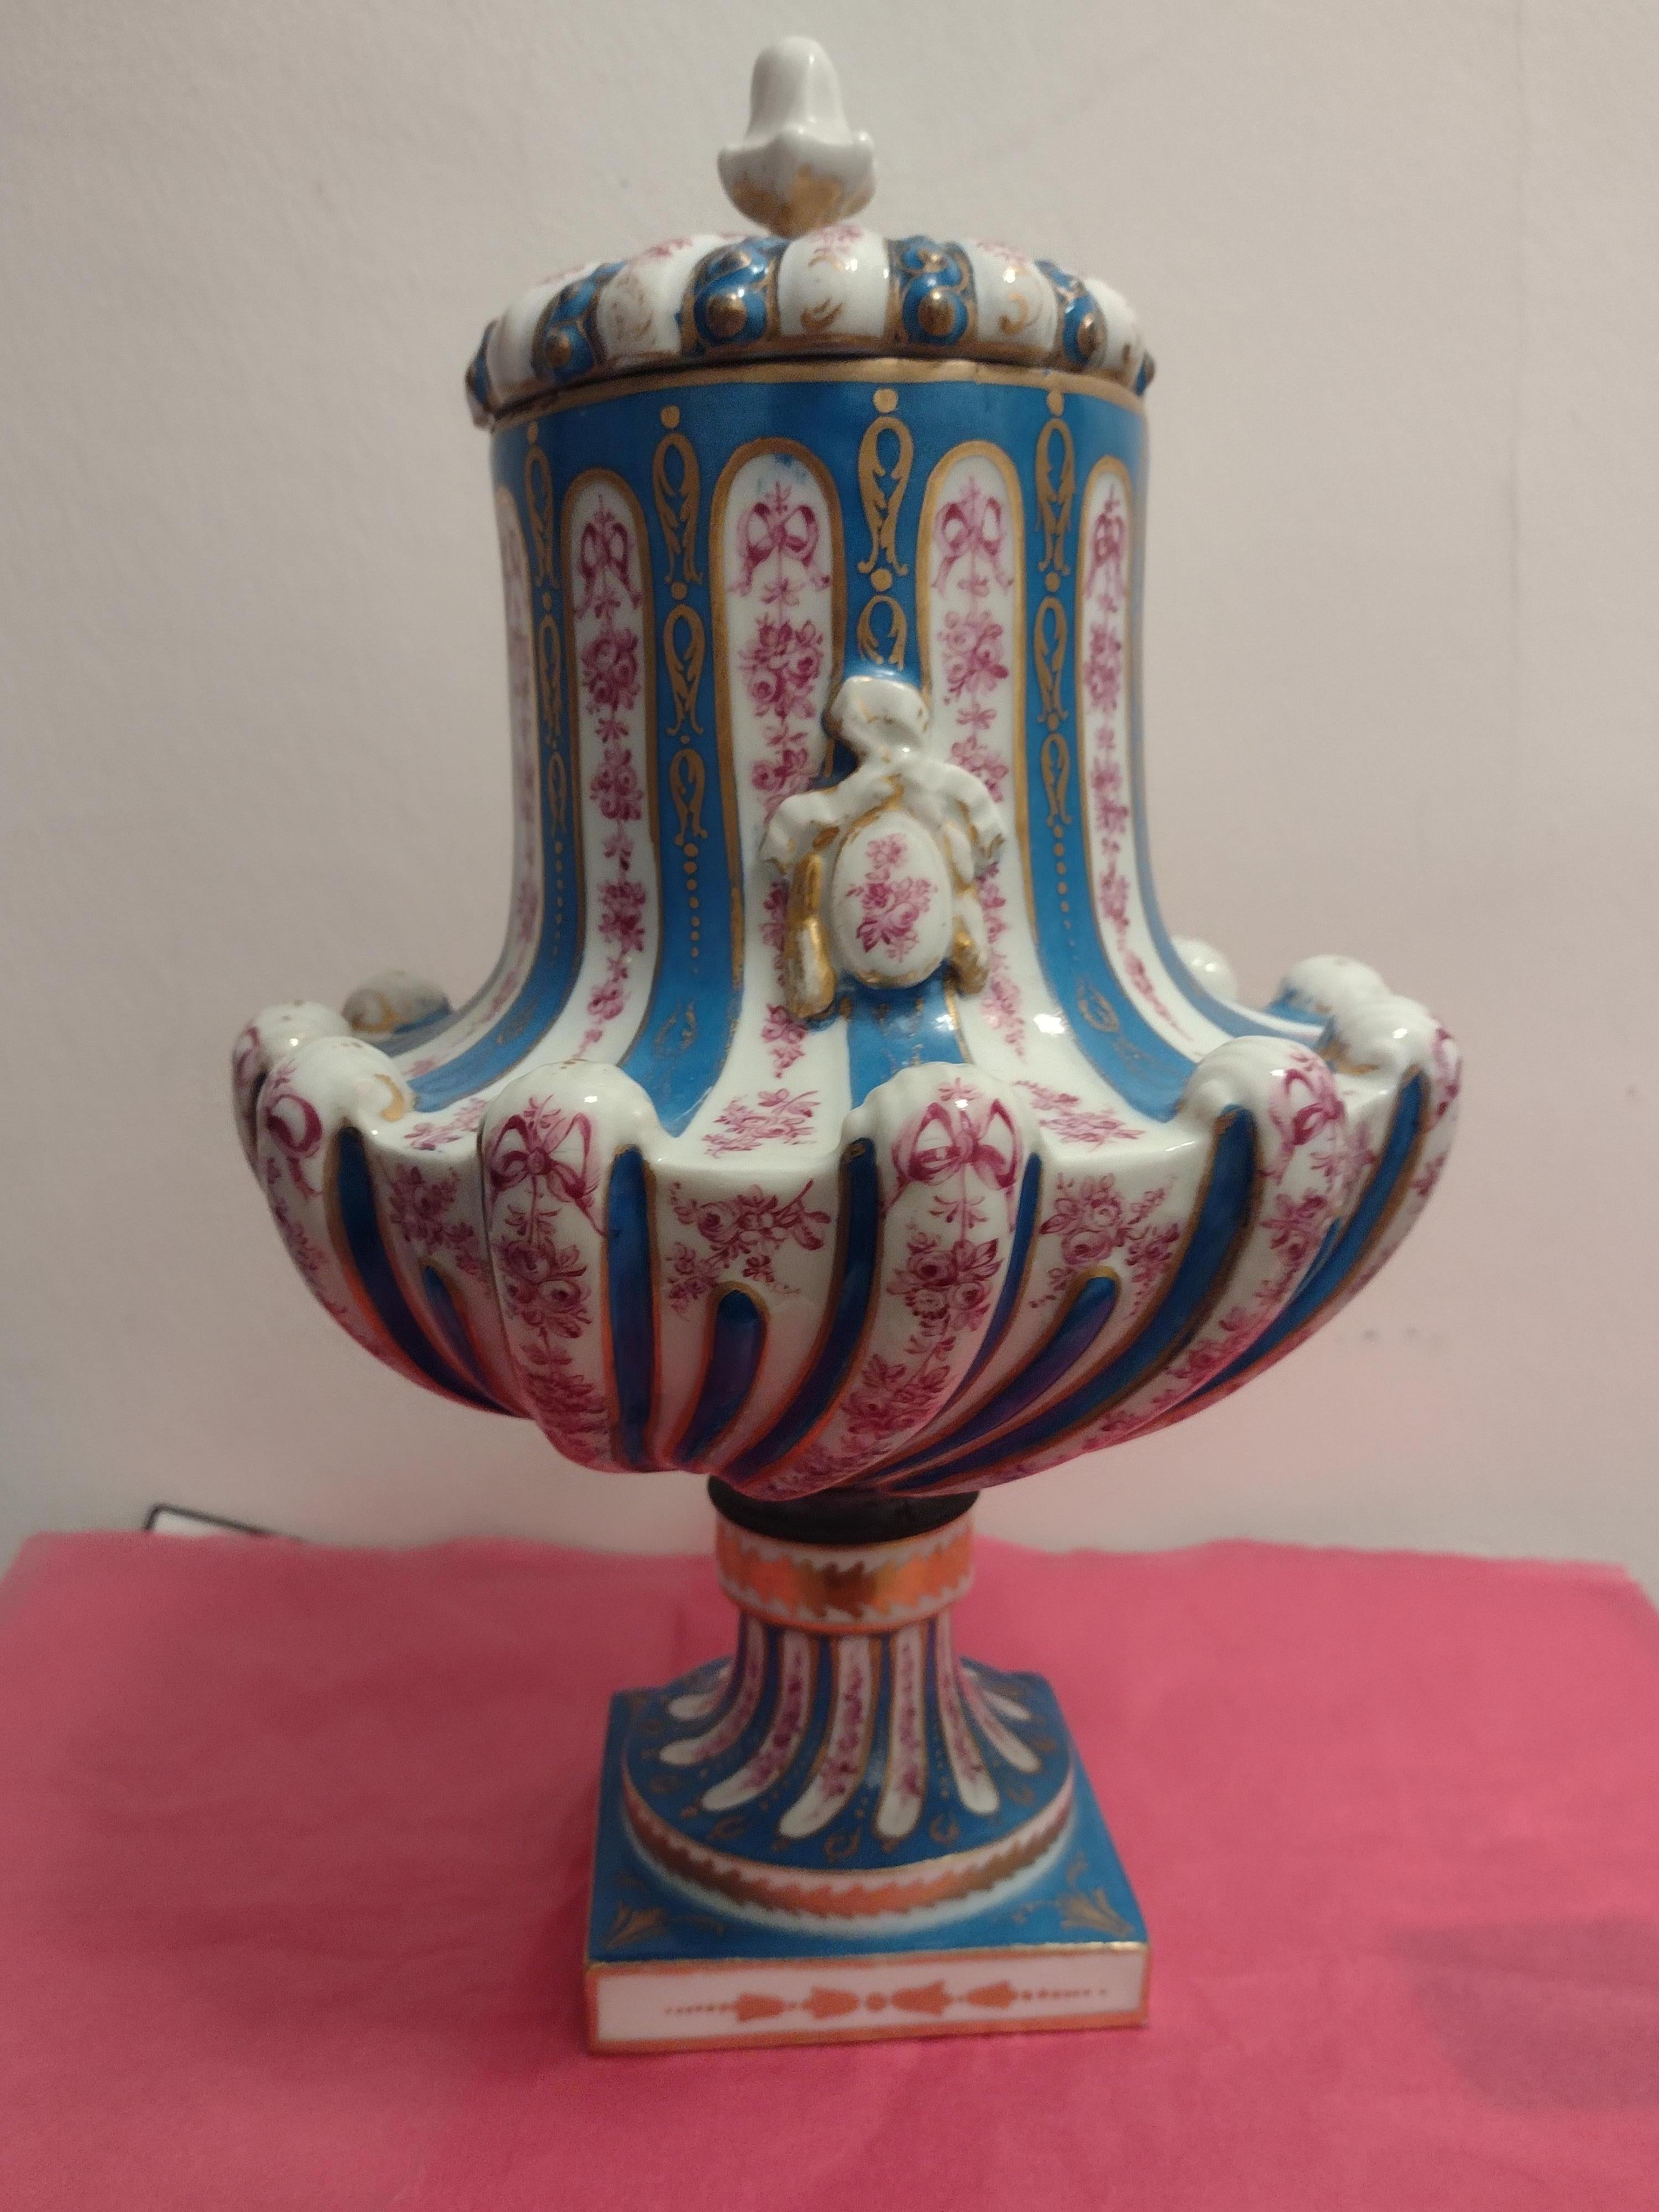 Vase couvert en porcelaine de style Sèvres, début du 20e siècle. Le corps en bois est surmonté d'un couvercle en forme de dôme, décoré d'un ruban et d'un ornement de feuillage, le tout reposant sur une base en bois.  sur socle carré, peinture pseudo